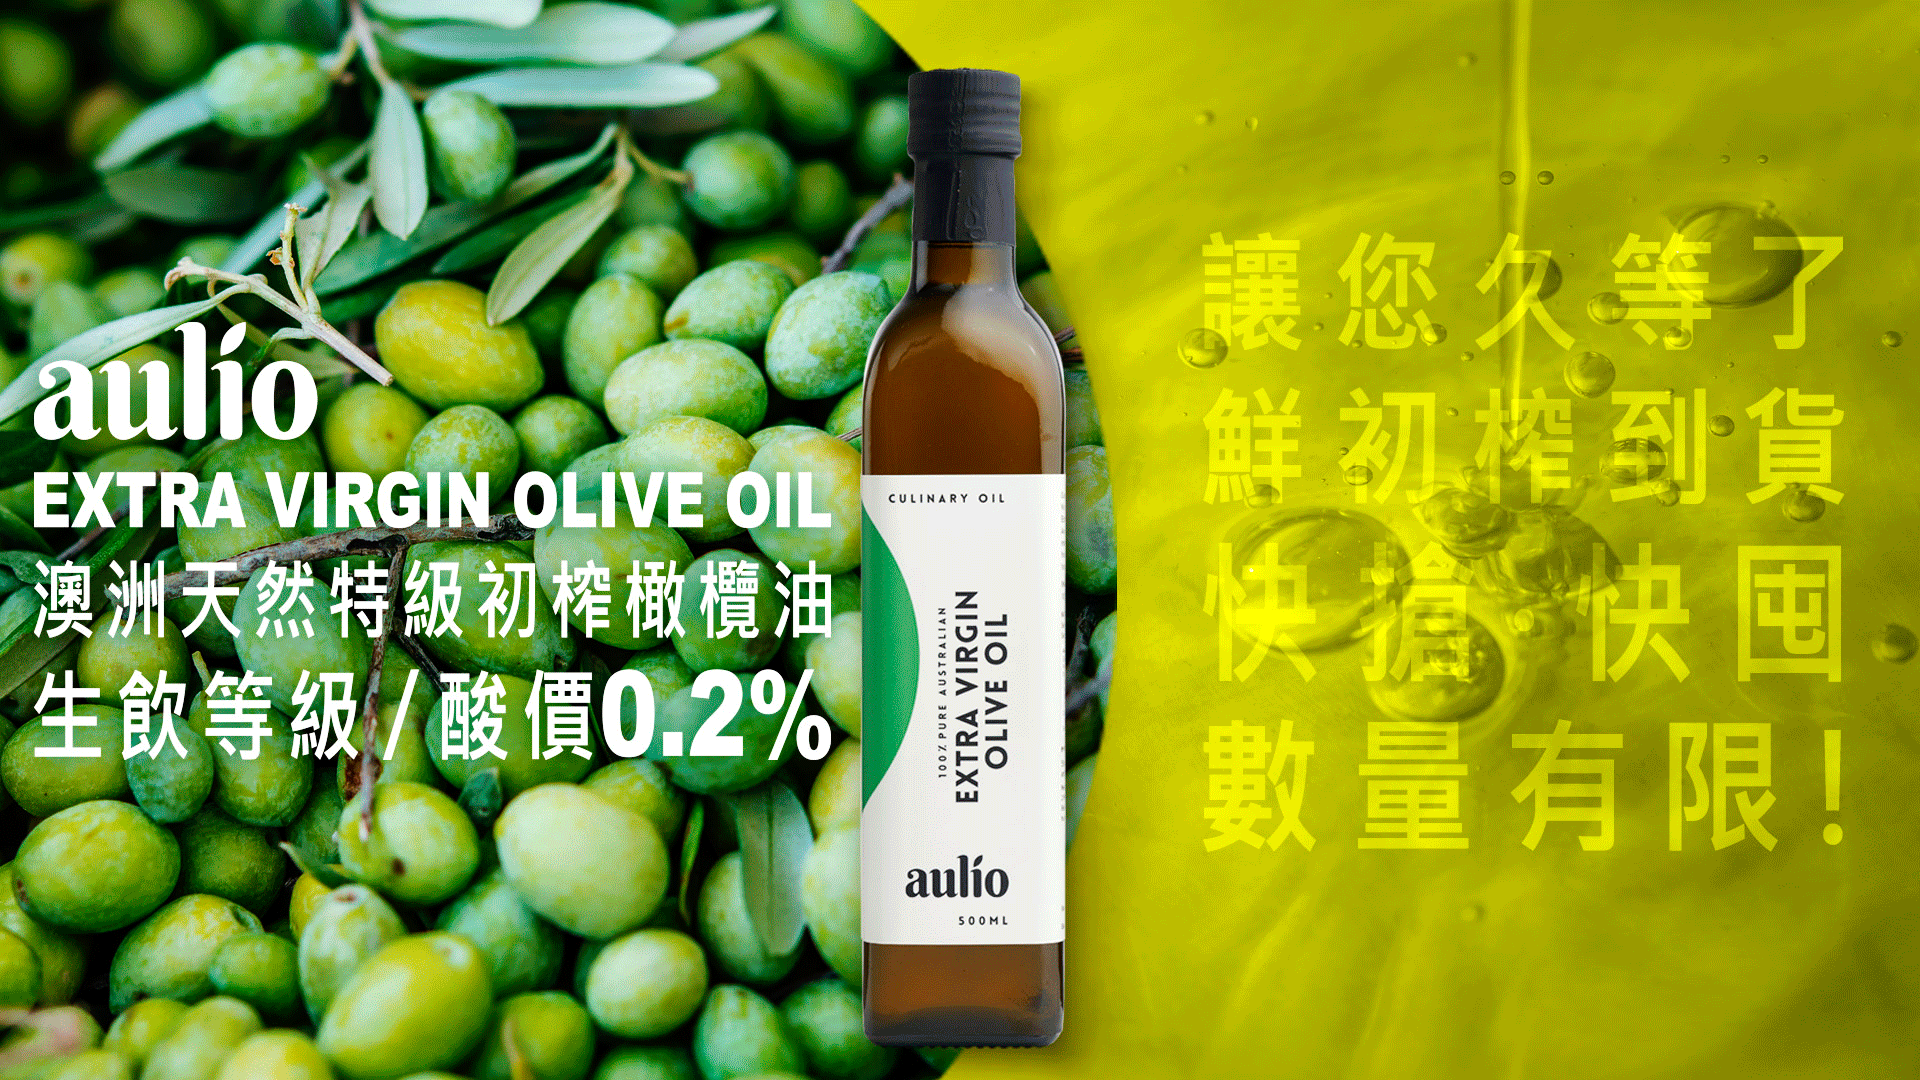 aulio-澳洲天然特級初榨橄欖油-500ml-生飲等級-嚴選砥家-olive-oil